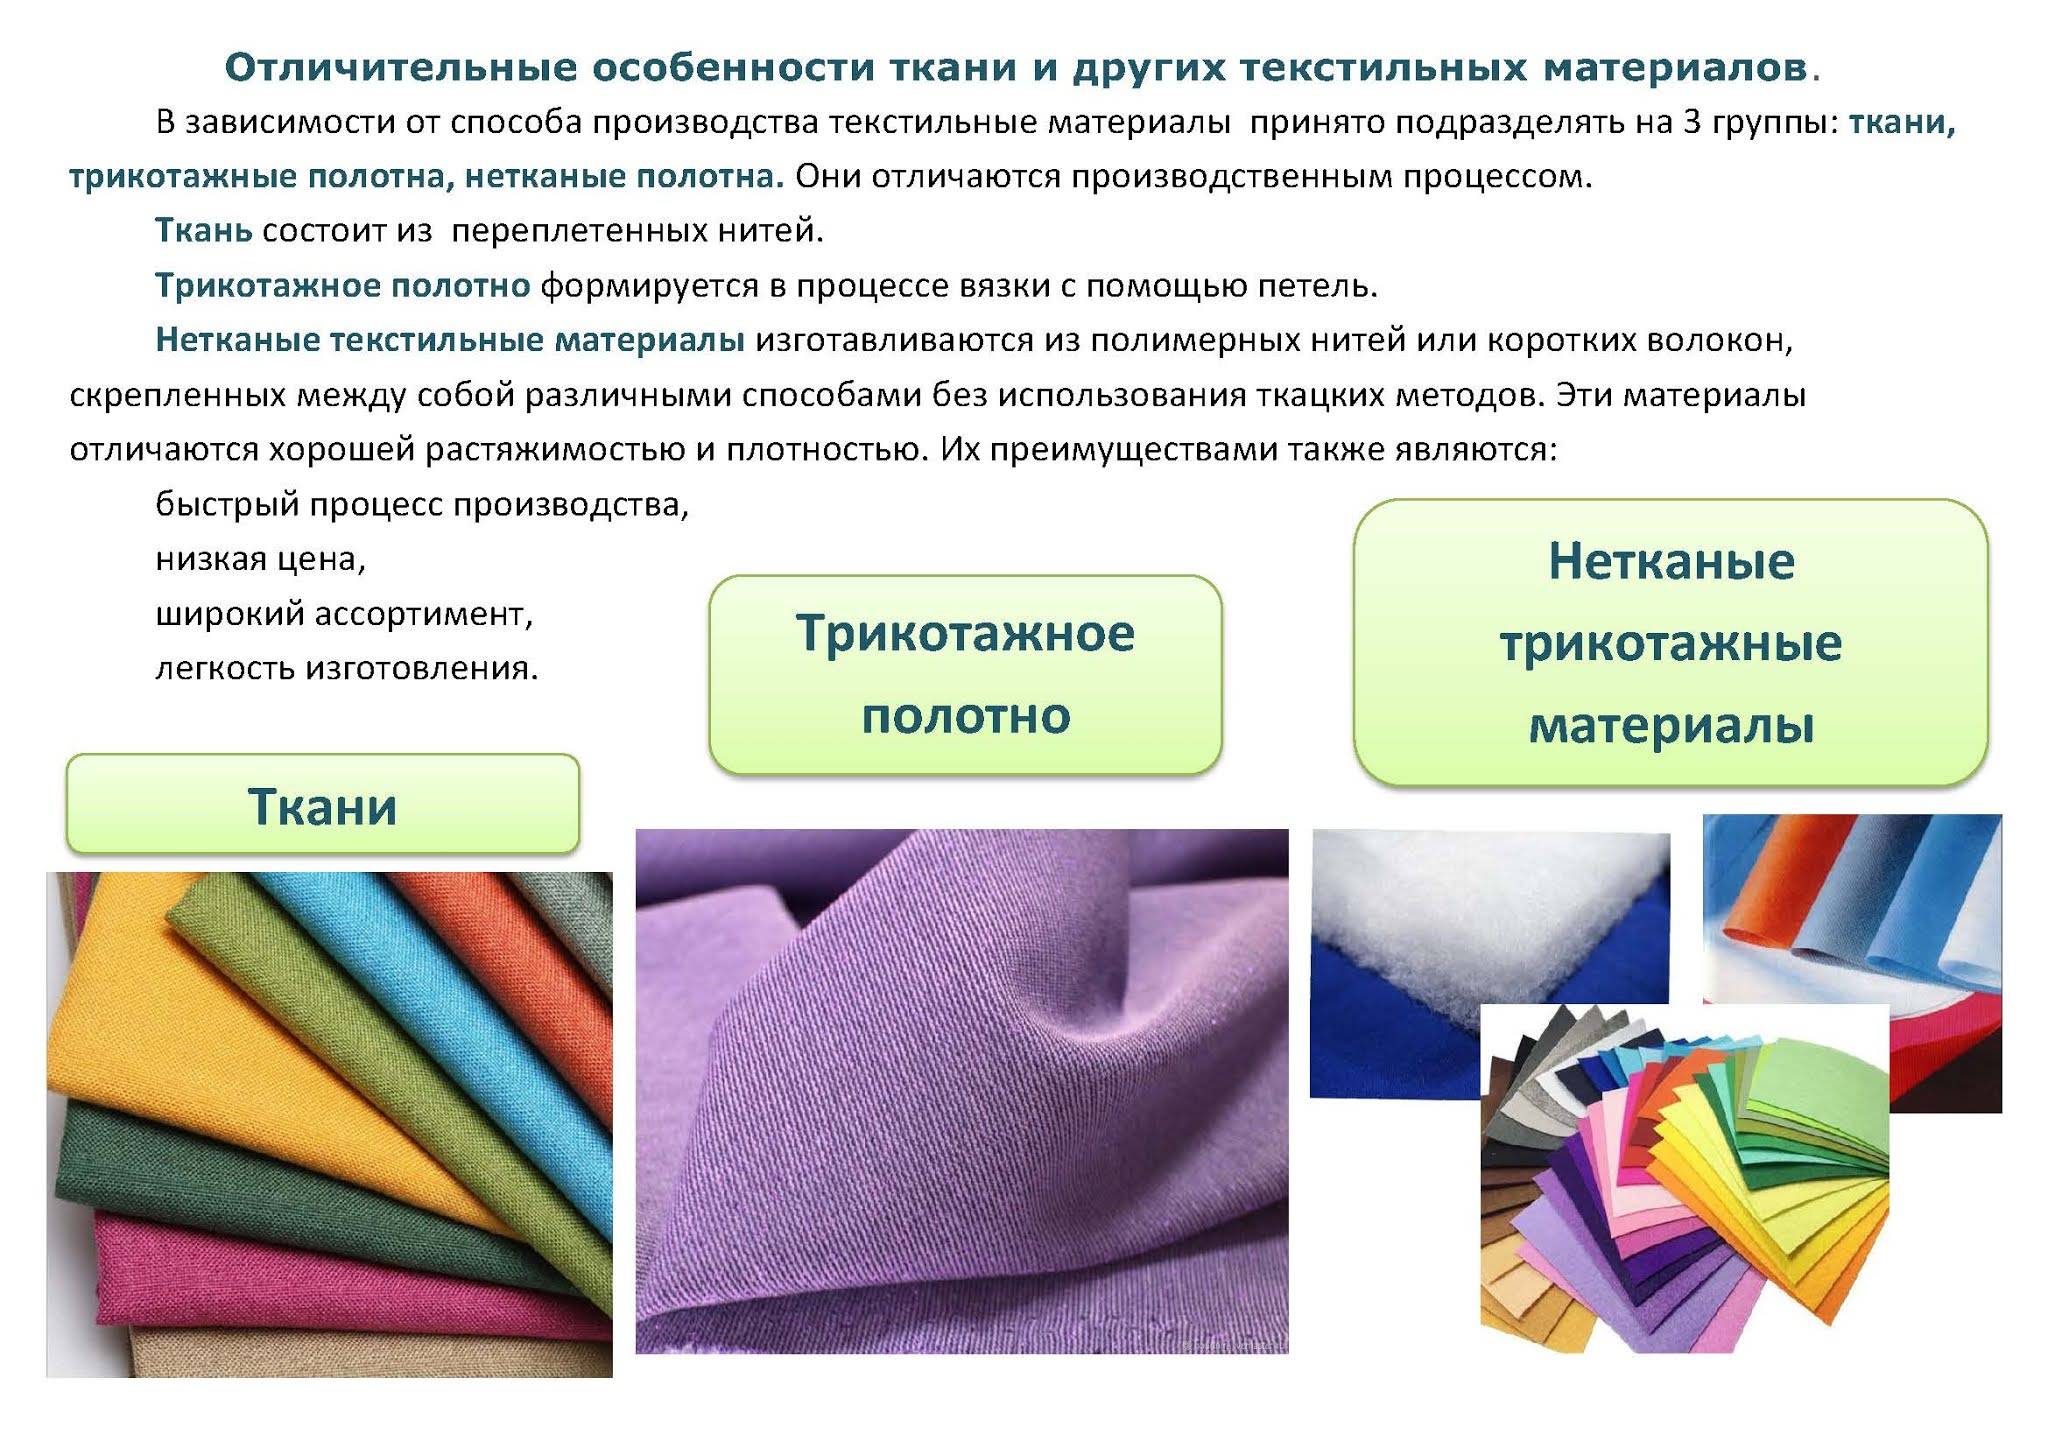 Кашемир: описание ткани, состав, виды и применение